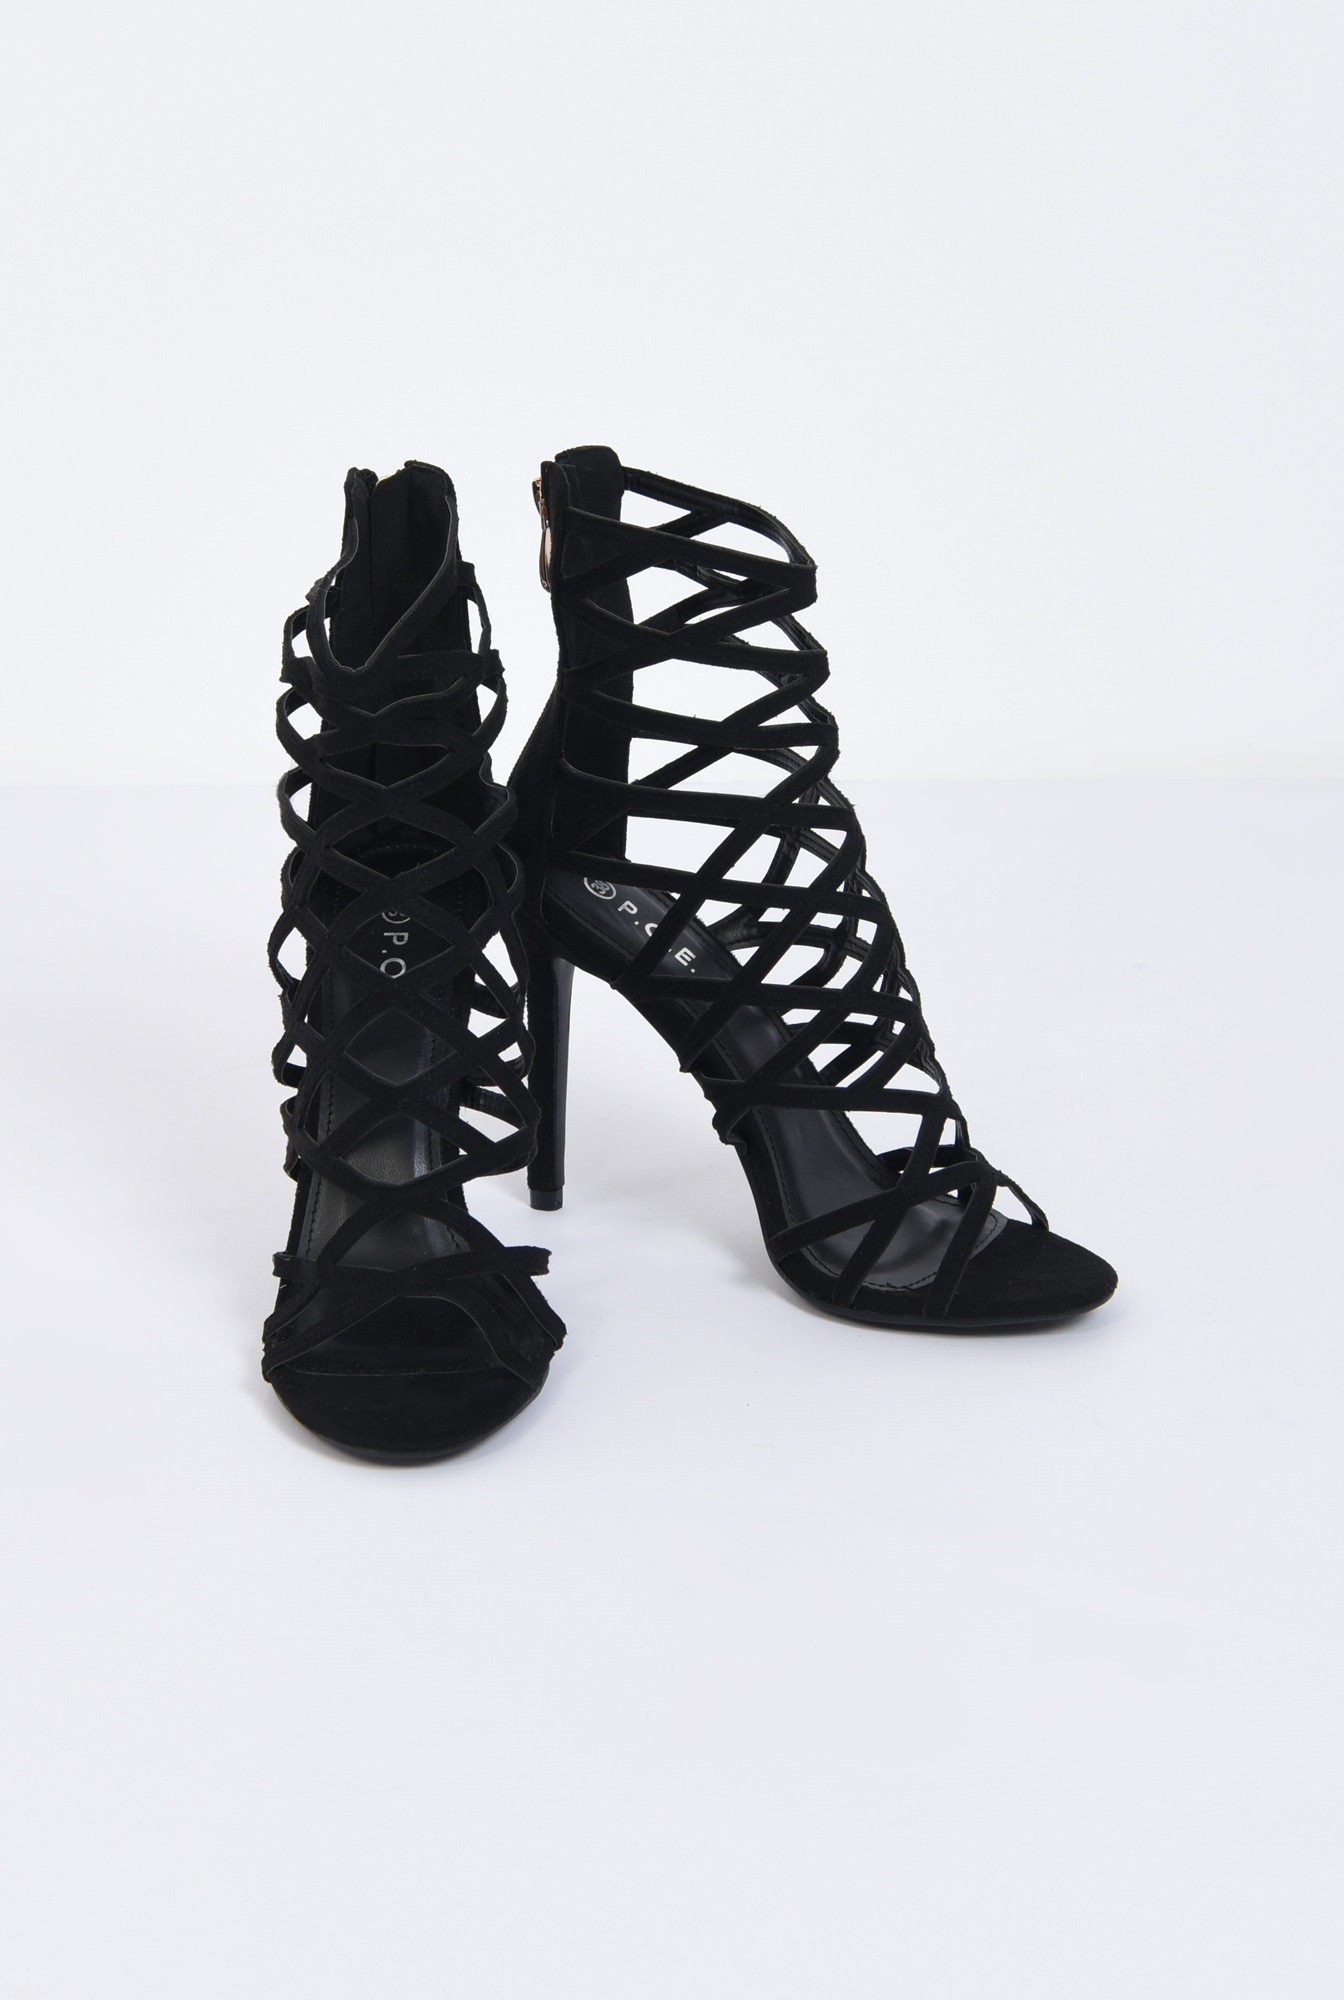 2 - sandale elegante, negru, stiletto